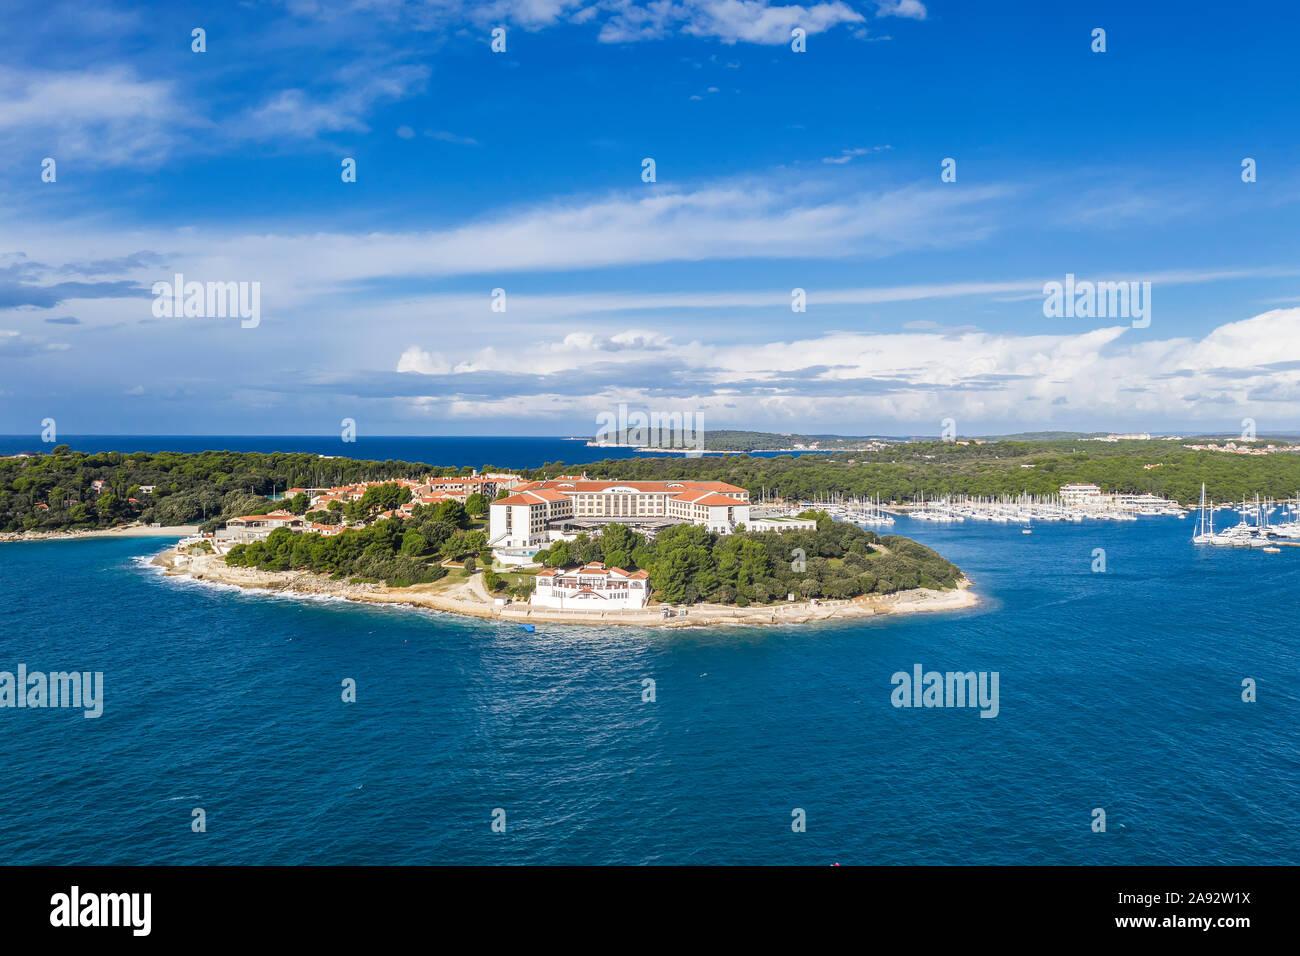 PULA, Croatie - 6 novembre, 2019 : Une vue aérienne de l'hôtel Park Plaza Resort à Pula, Istrie, Croatie Banque D'Images